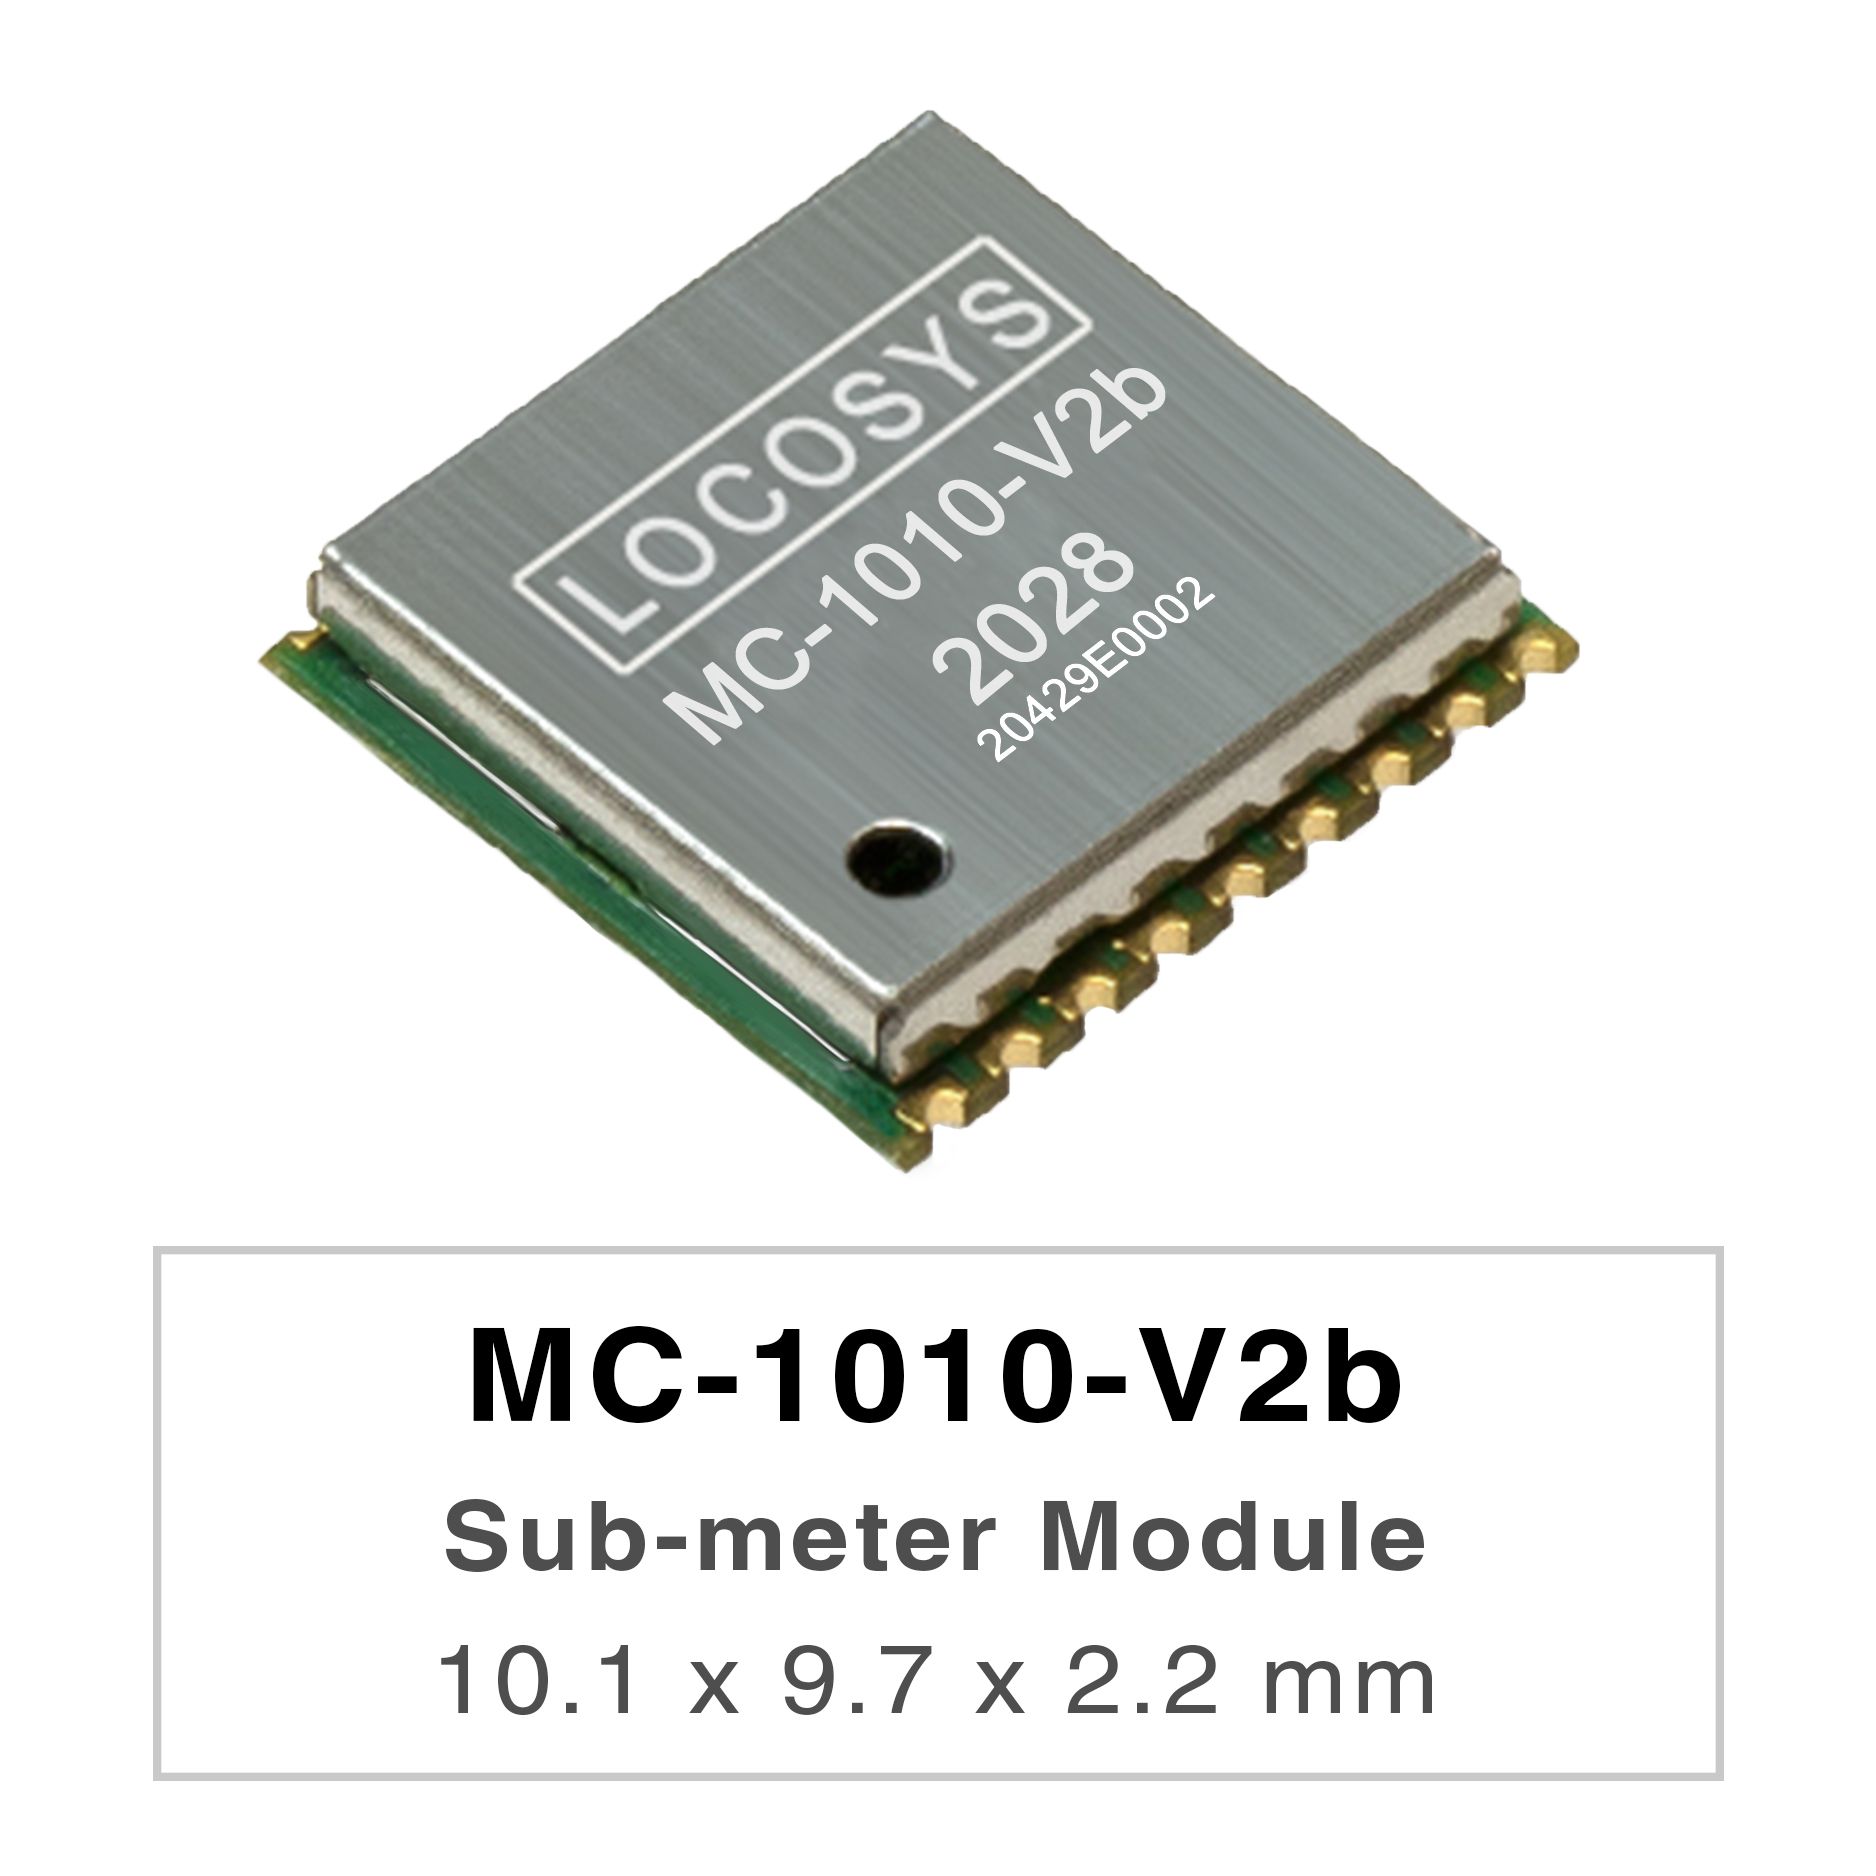 Les séries LOCOSYS MC-1010-Vxx sont des modules de positionnement GNSS bi-bande hautes performances
     <br />capables de suivre tous les systèmes de navigation civile mondiaux. Ils adoptent un processus de 12 nm et intègrent une
     <br />architecture de gestion de l'alimentation efficace pour une faible consommation d'énergie et une sensibilité élevée.